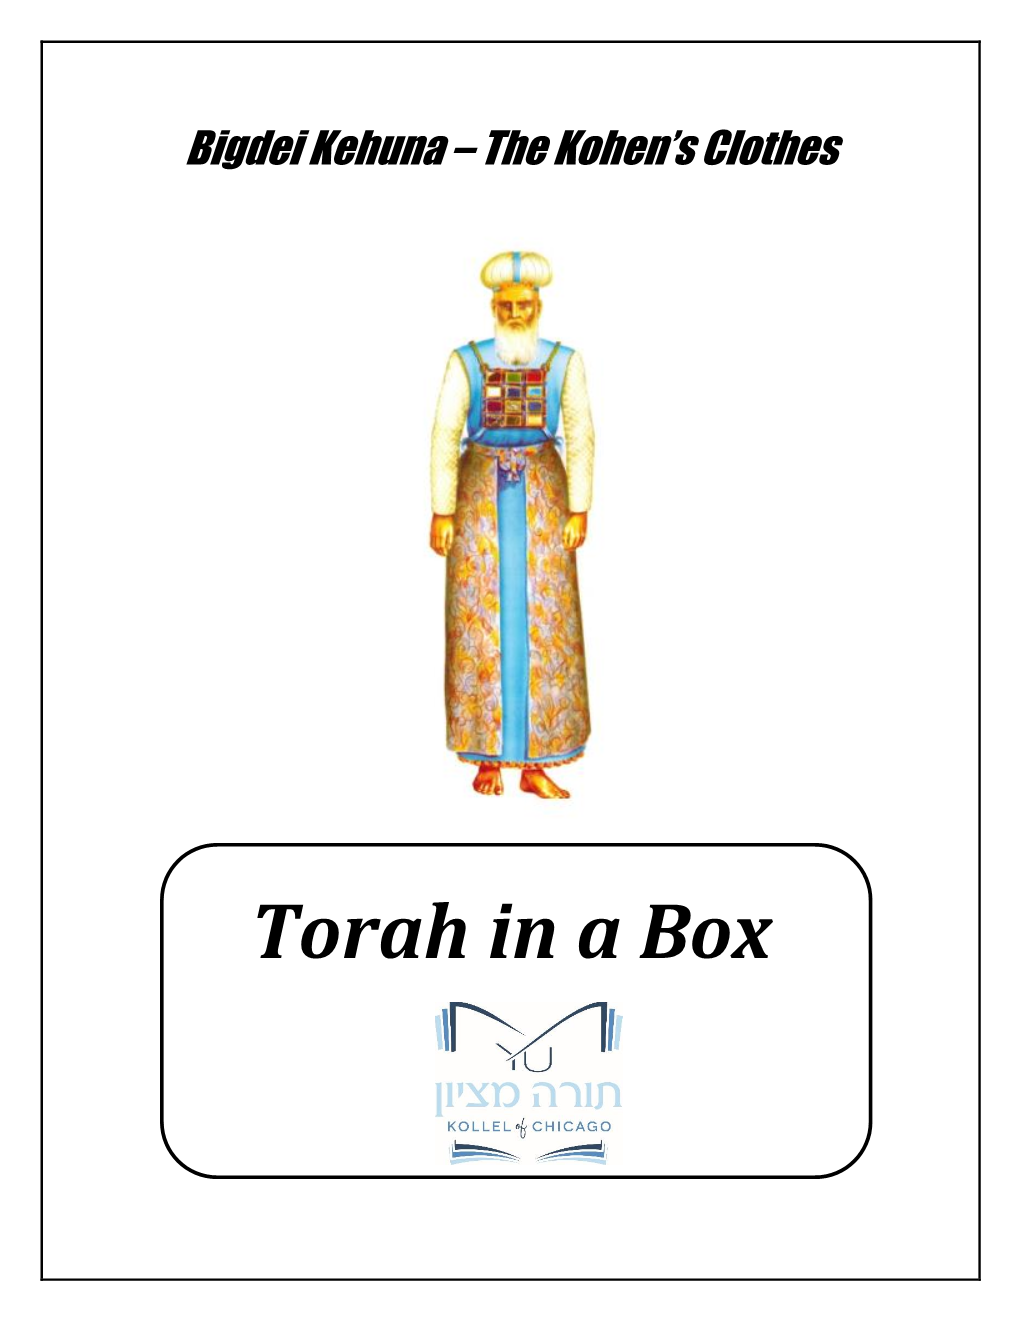 Torah in a Box